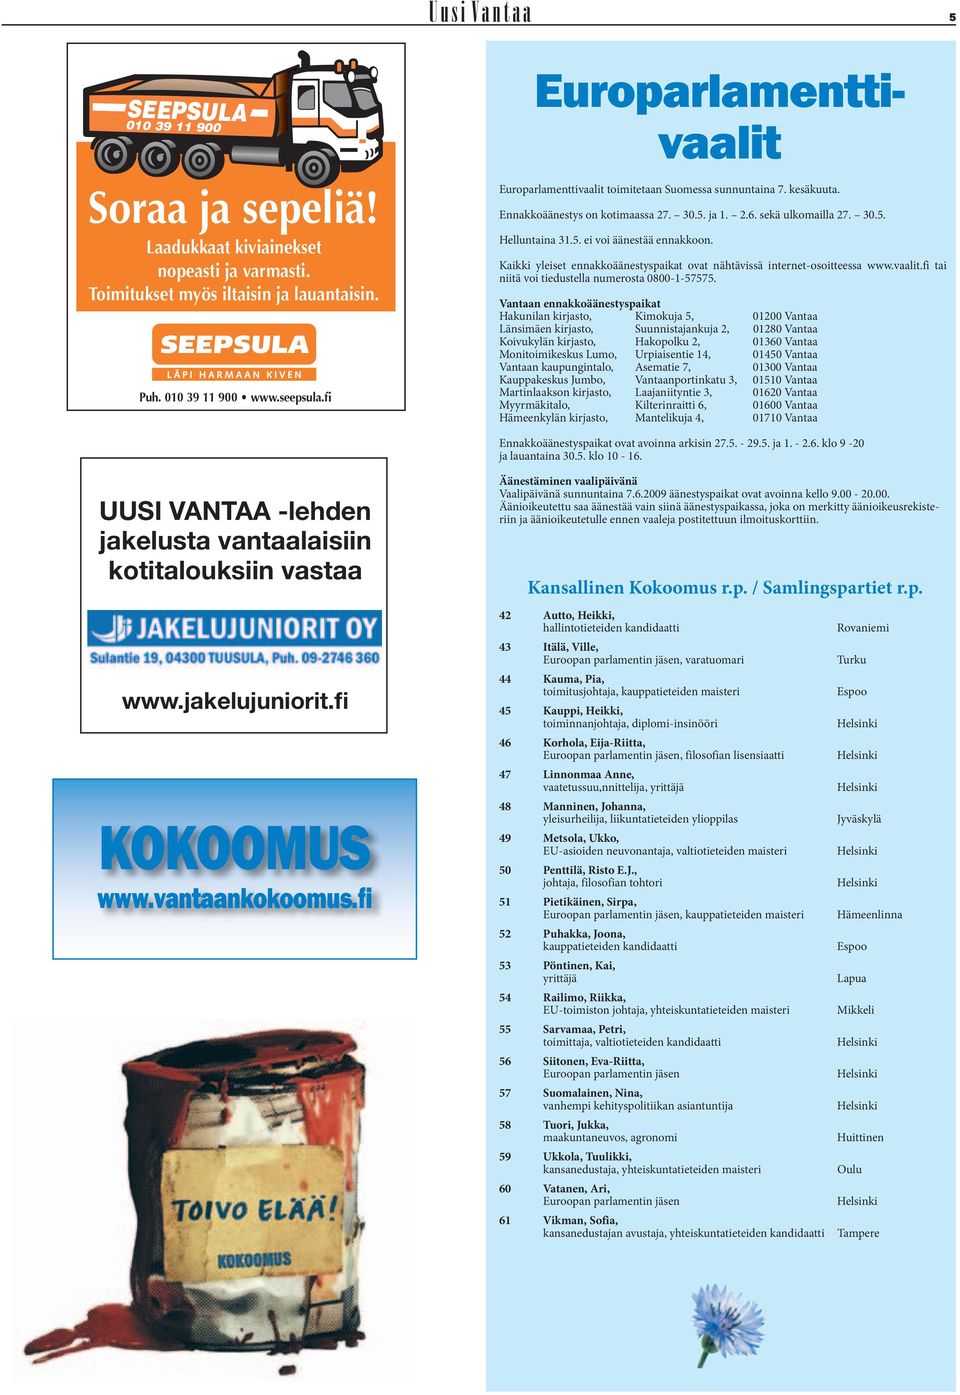 Kaikki yleiset ennakkoäänestyspaikat ovat nähtävissä internet-osoitteessa www.vaalit.fi tai niitä voi tiedustella numerosta 0800-1-57575.